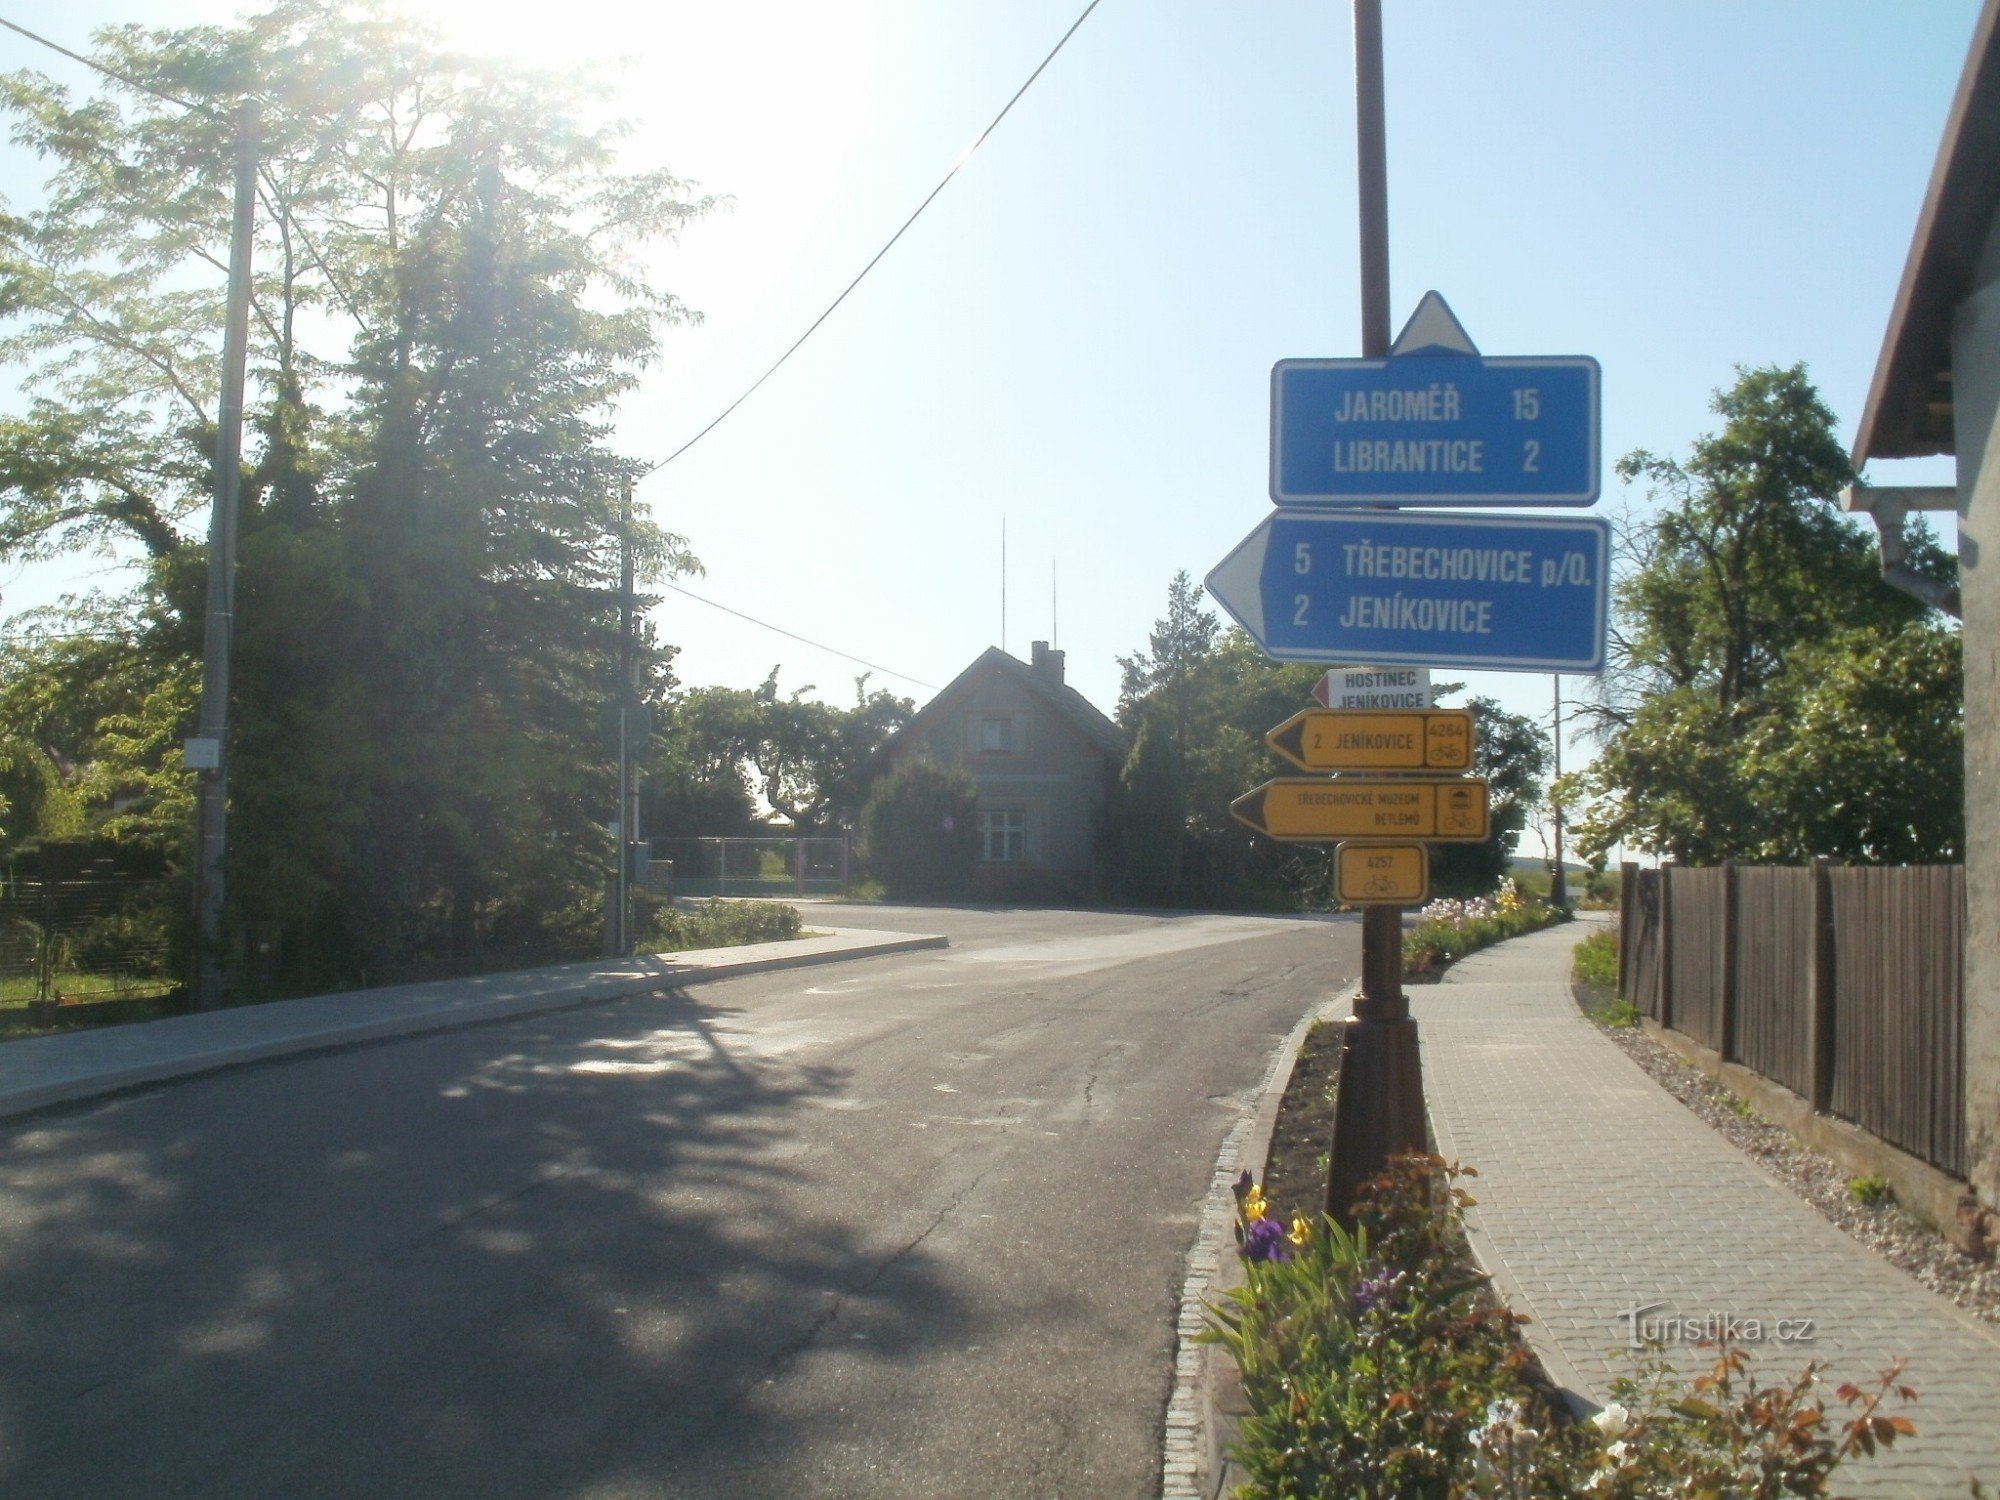 Ngã tư dành cho người đi xe đạp - Libníkovice, tại ngã tư